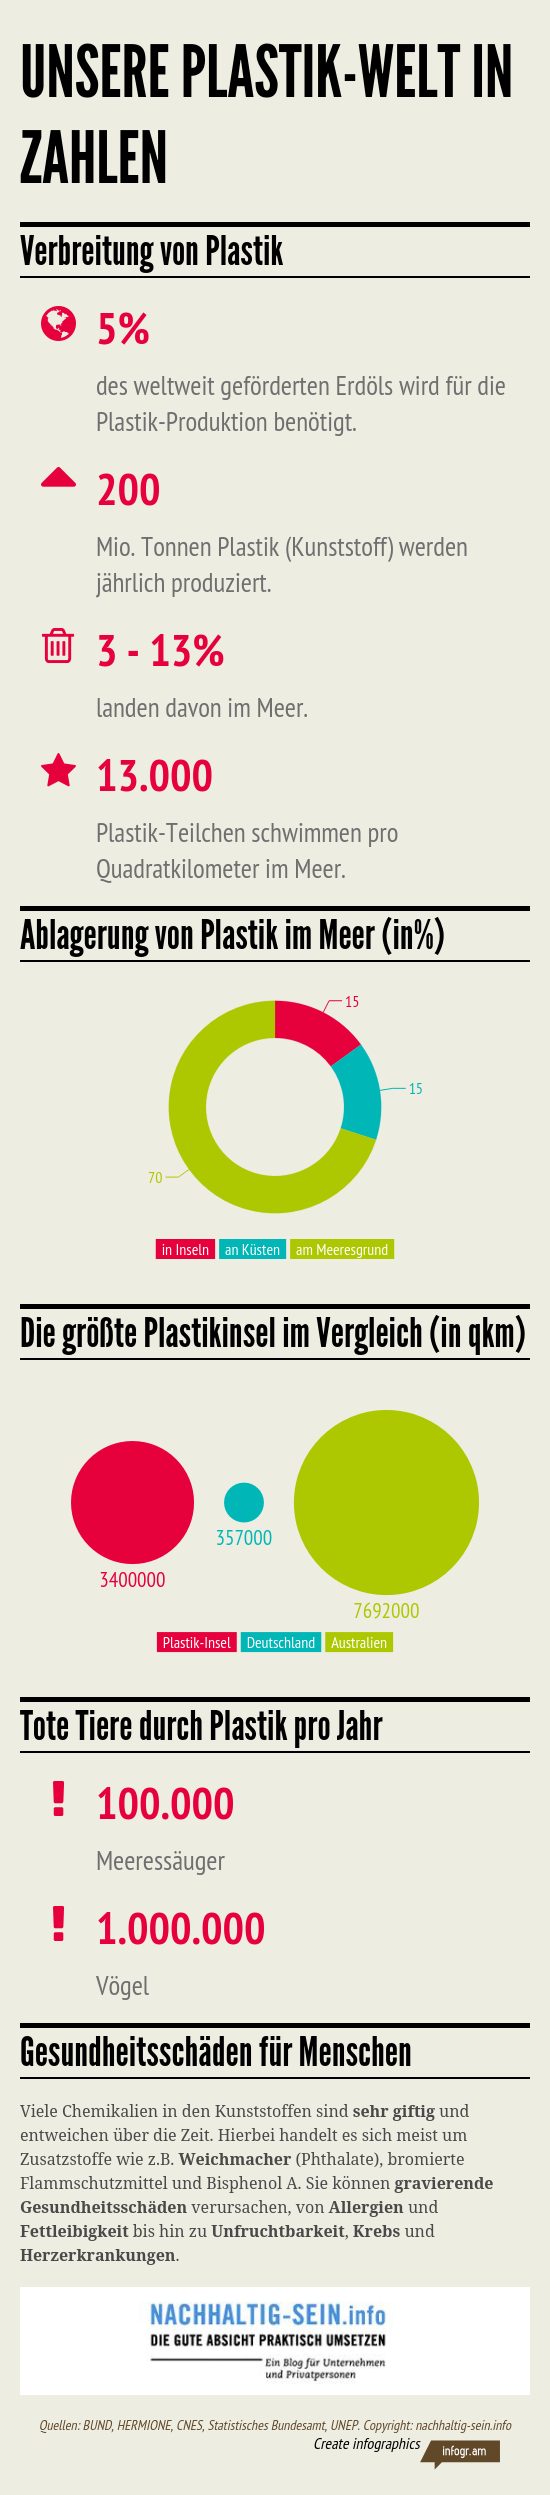 Unsere Plastik Welt in Zahlen von nachhaltig-sein.info